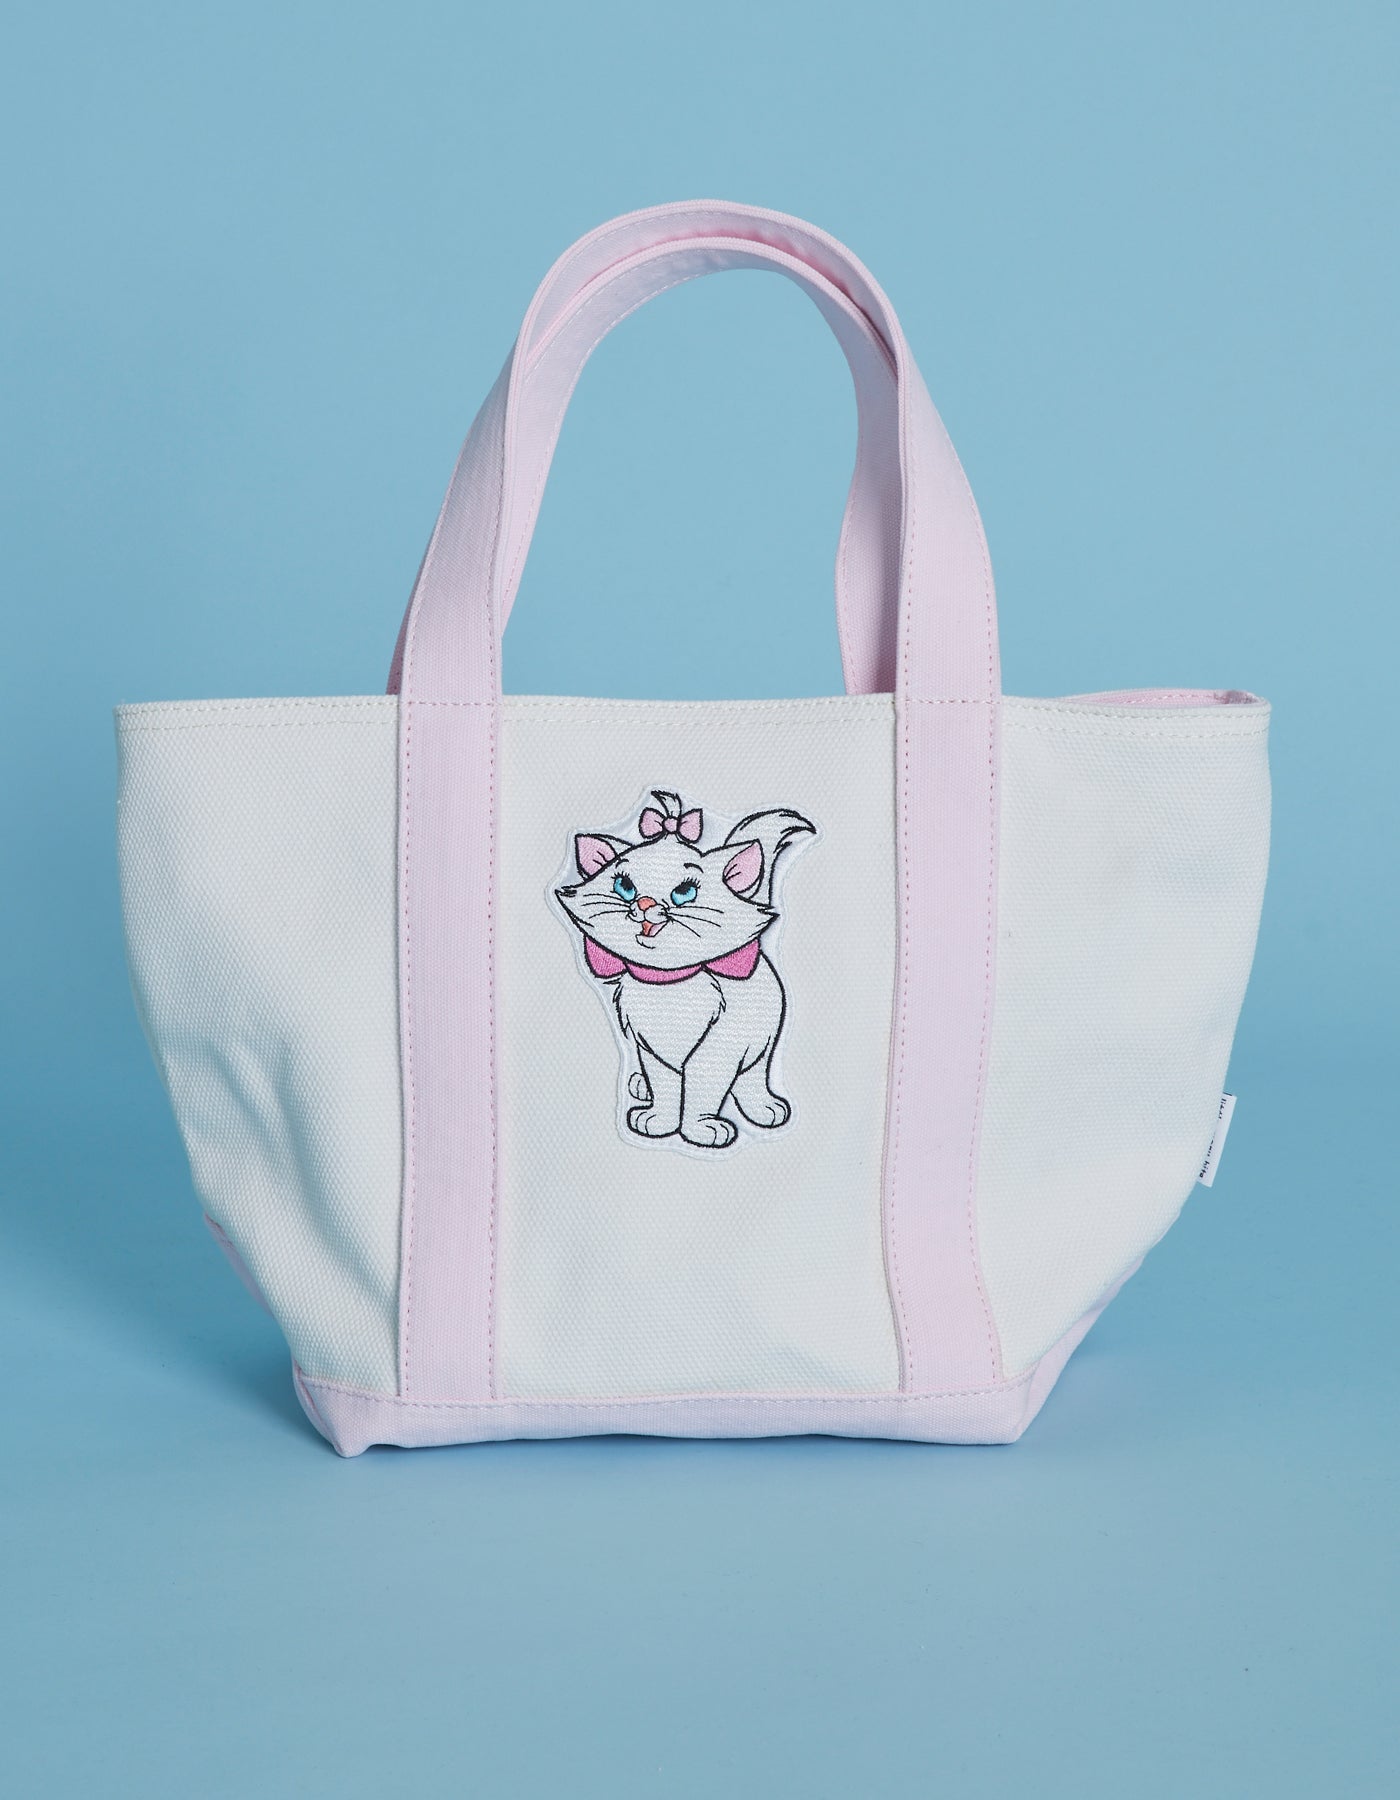 Disney character tote bag / PINK